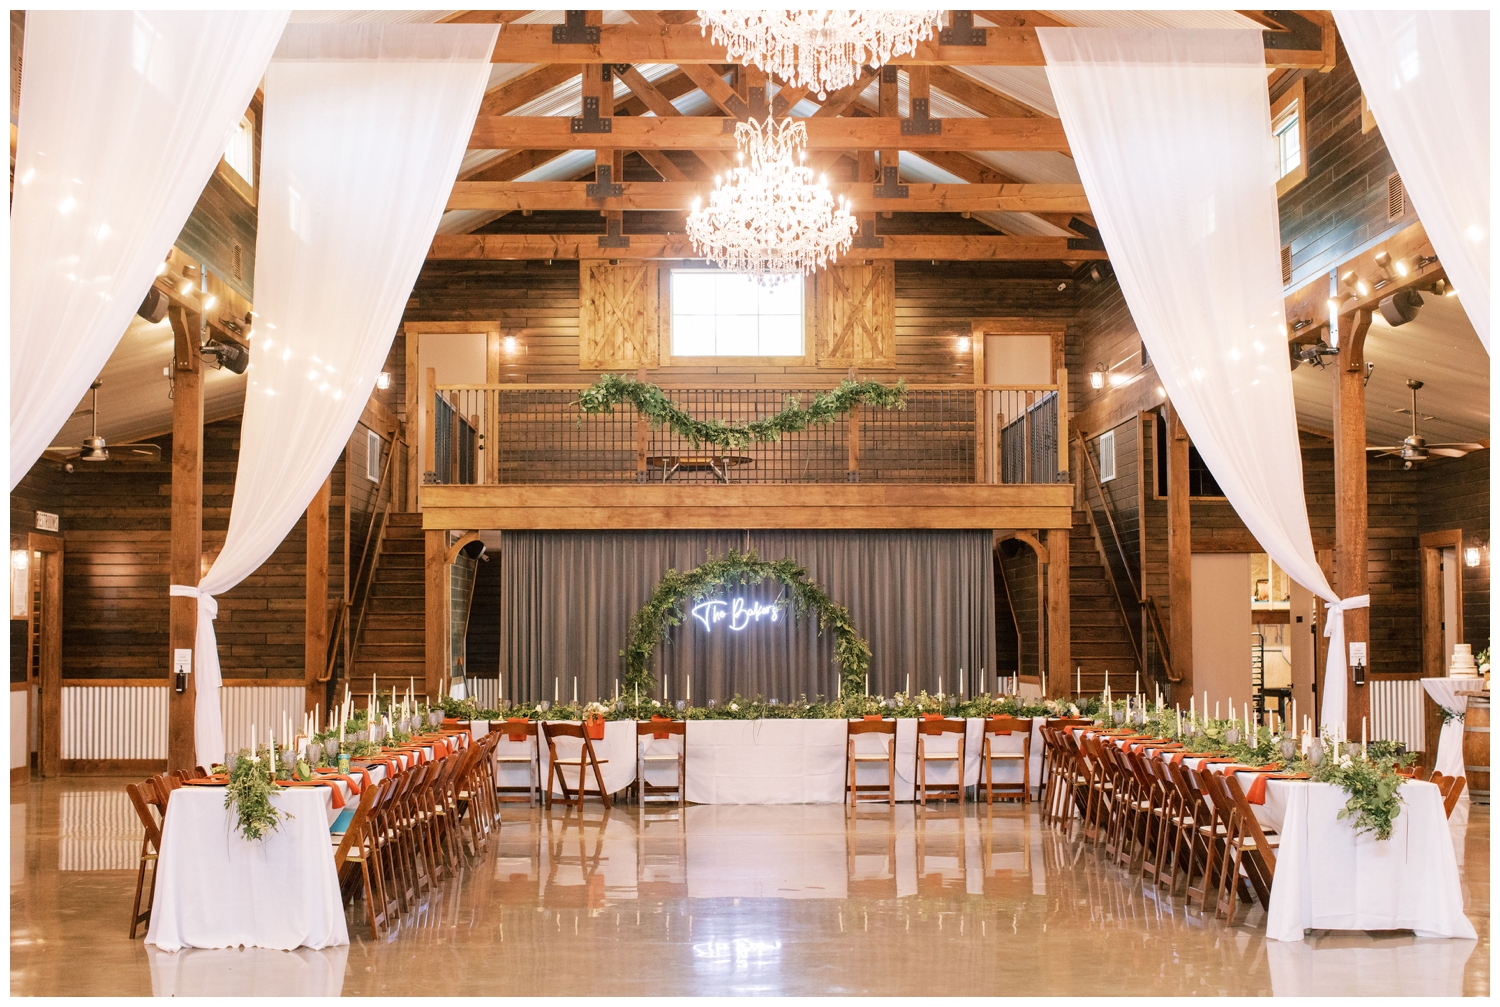 Peach Creek Ranch wedding reception hall inside